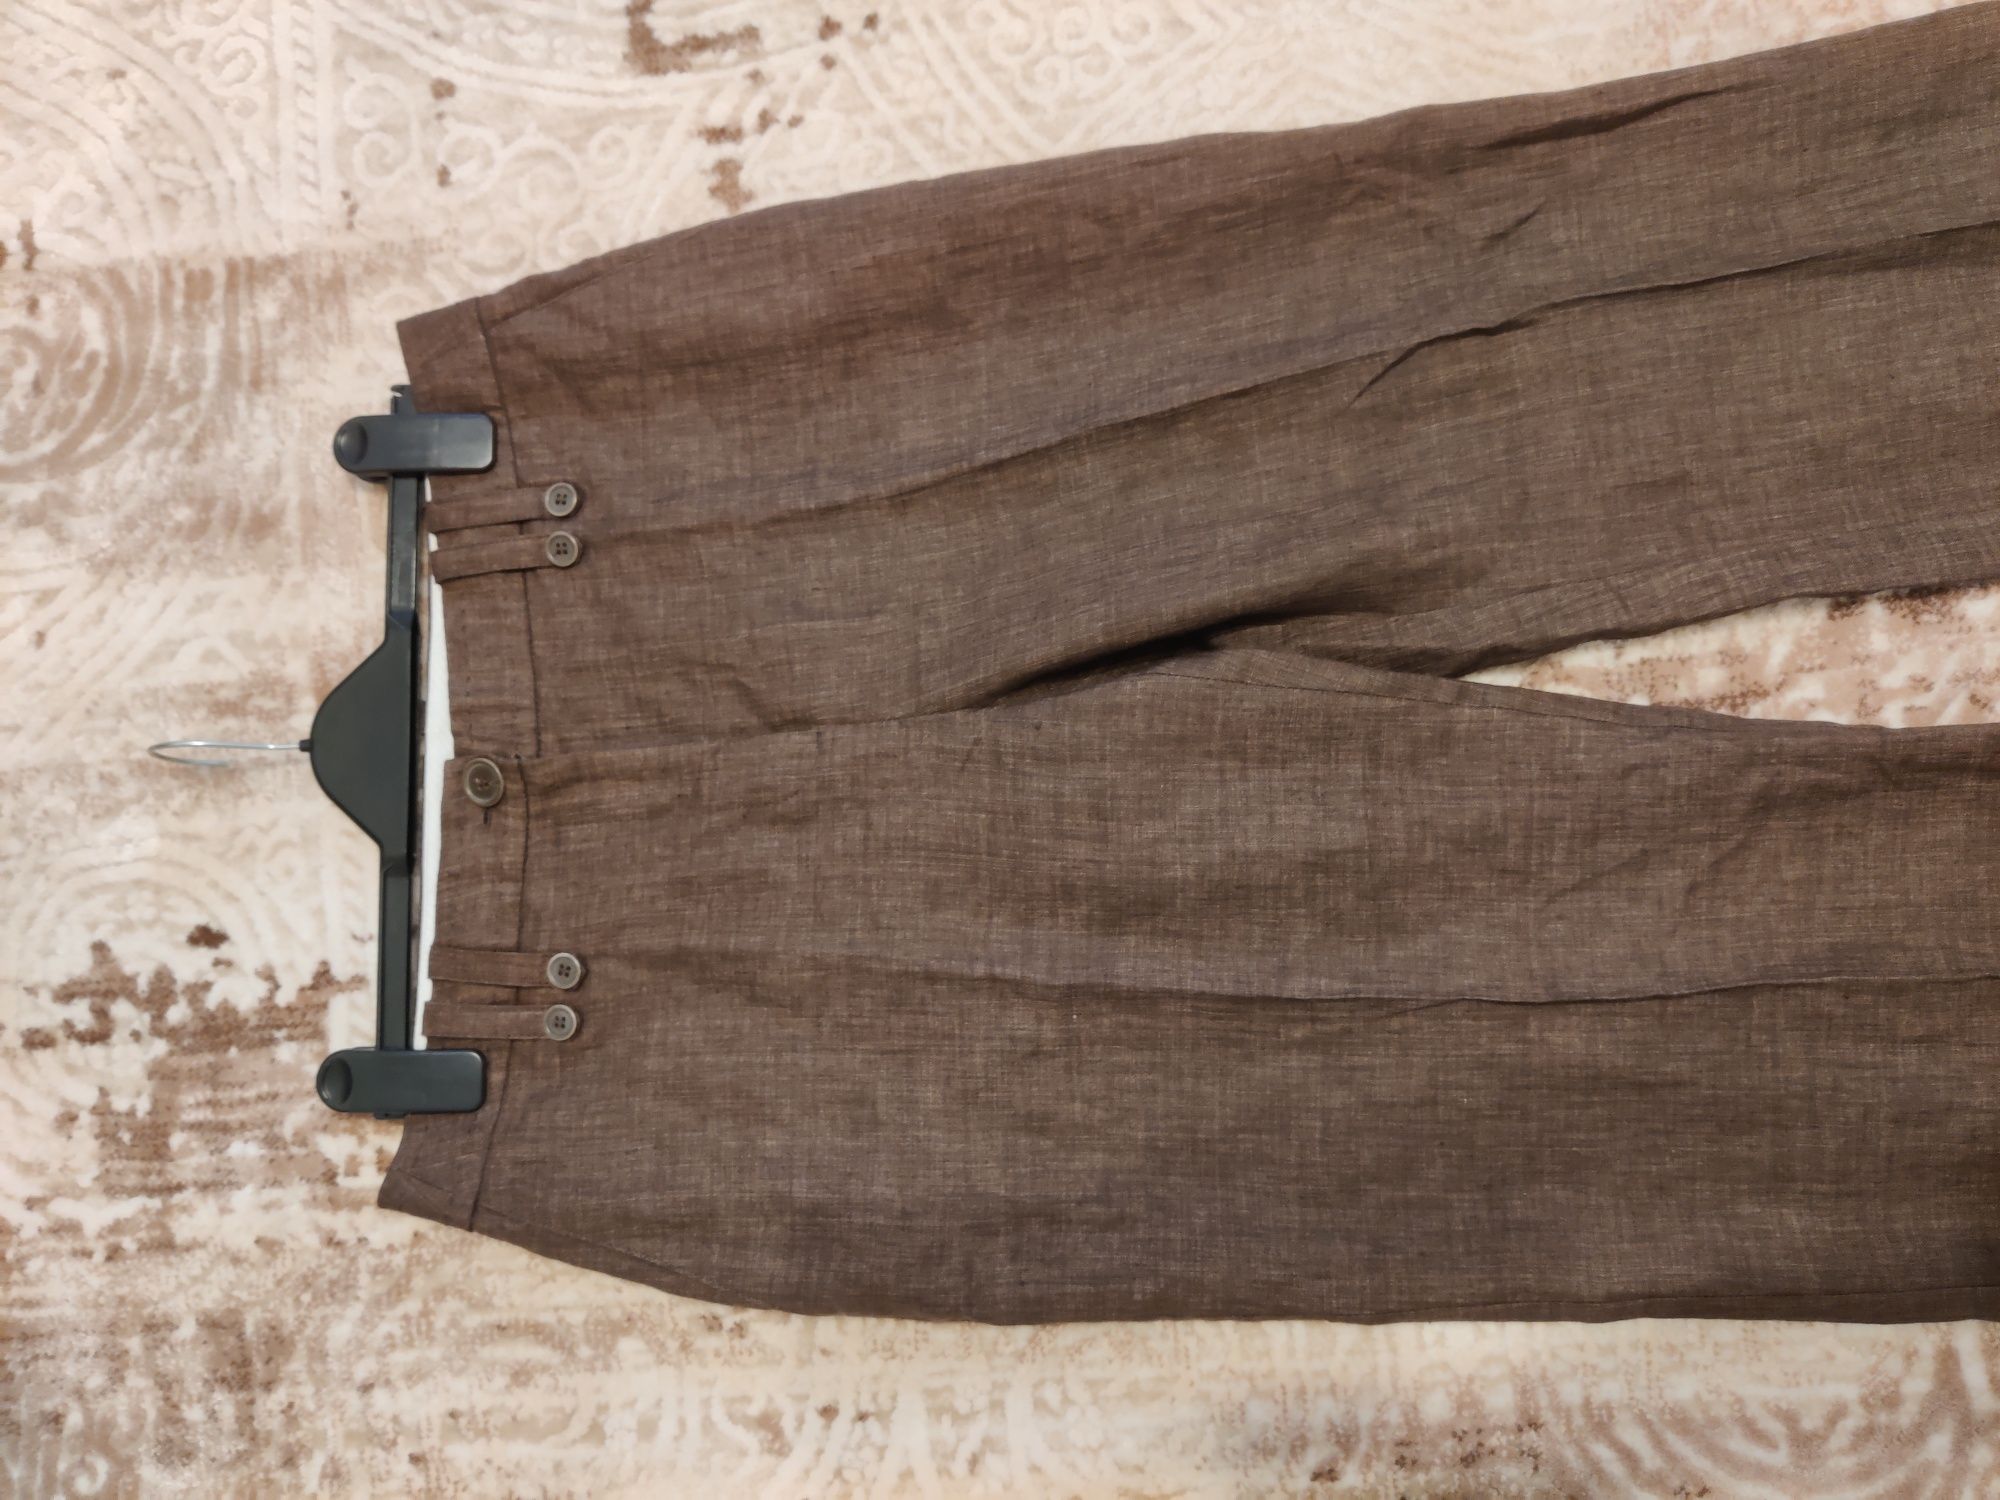 H&M pantaloni 100% din IN culoare maro stare foarte bună măr. 38